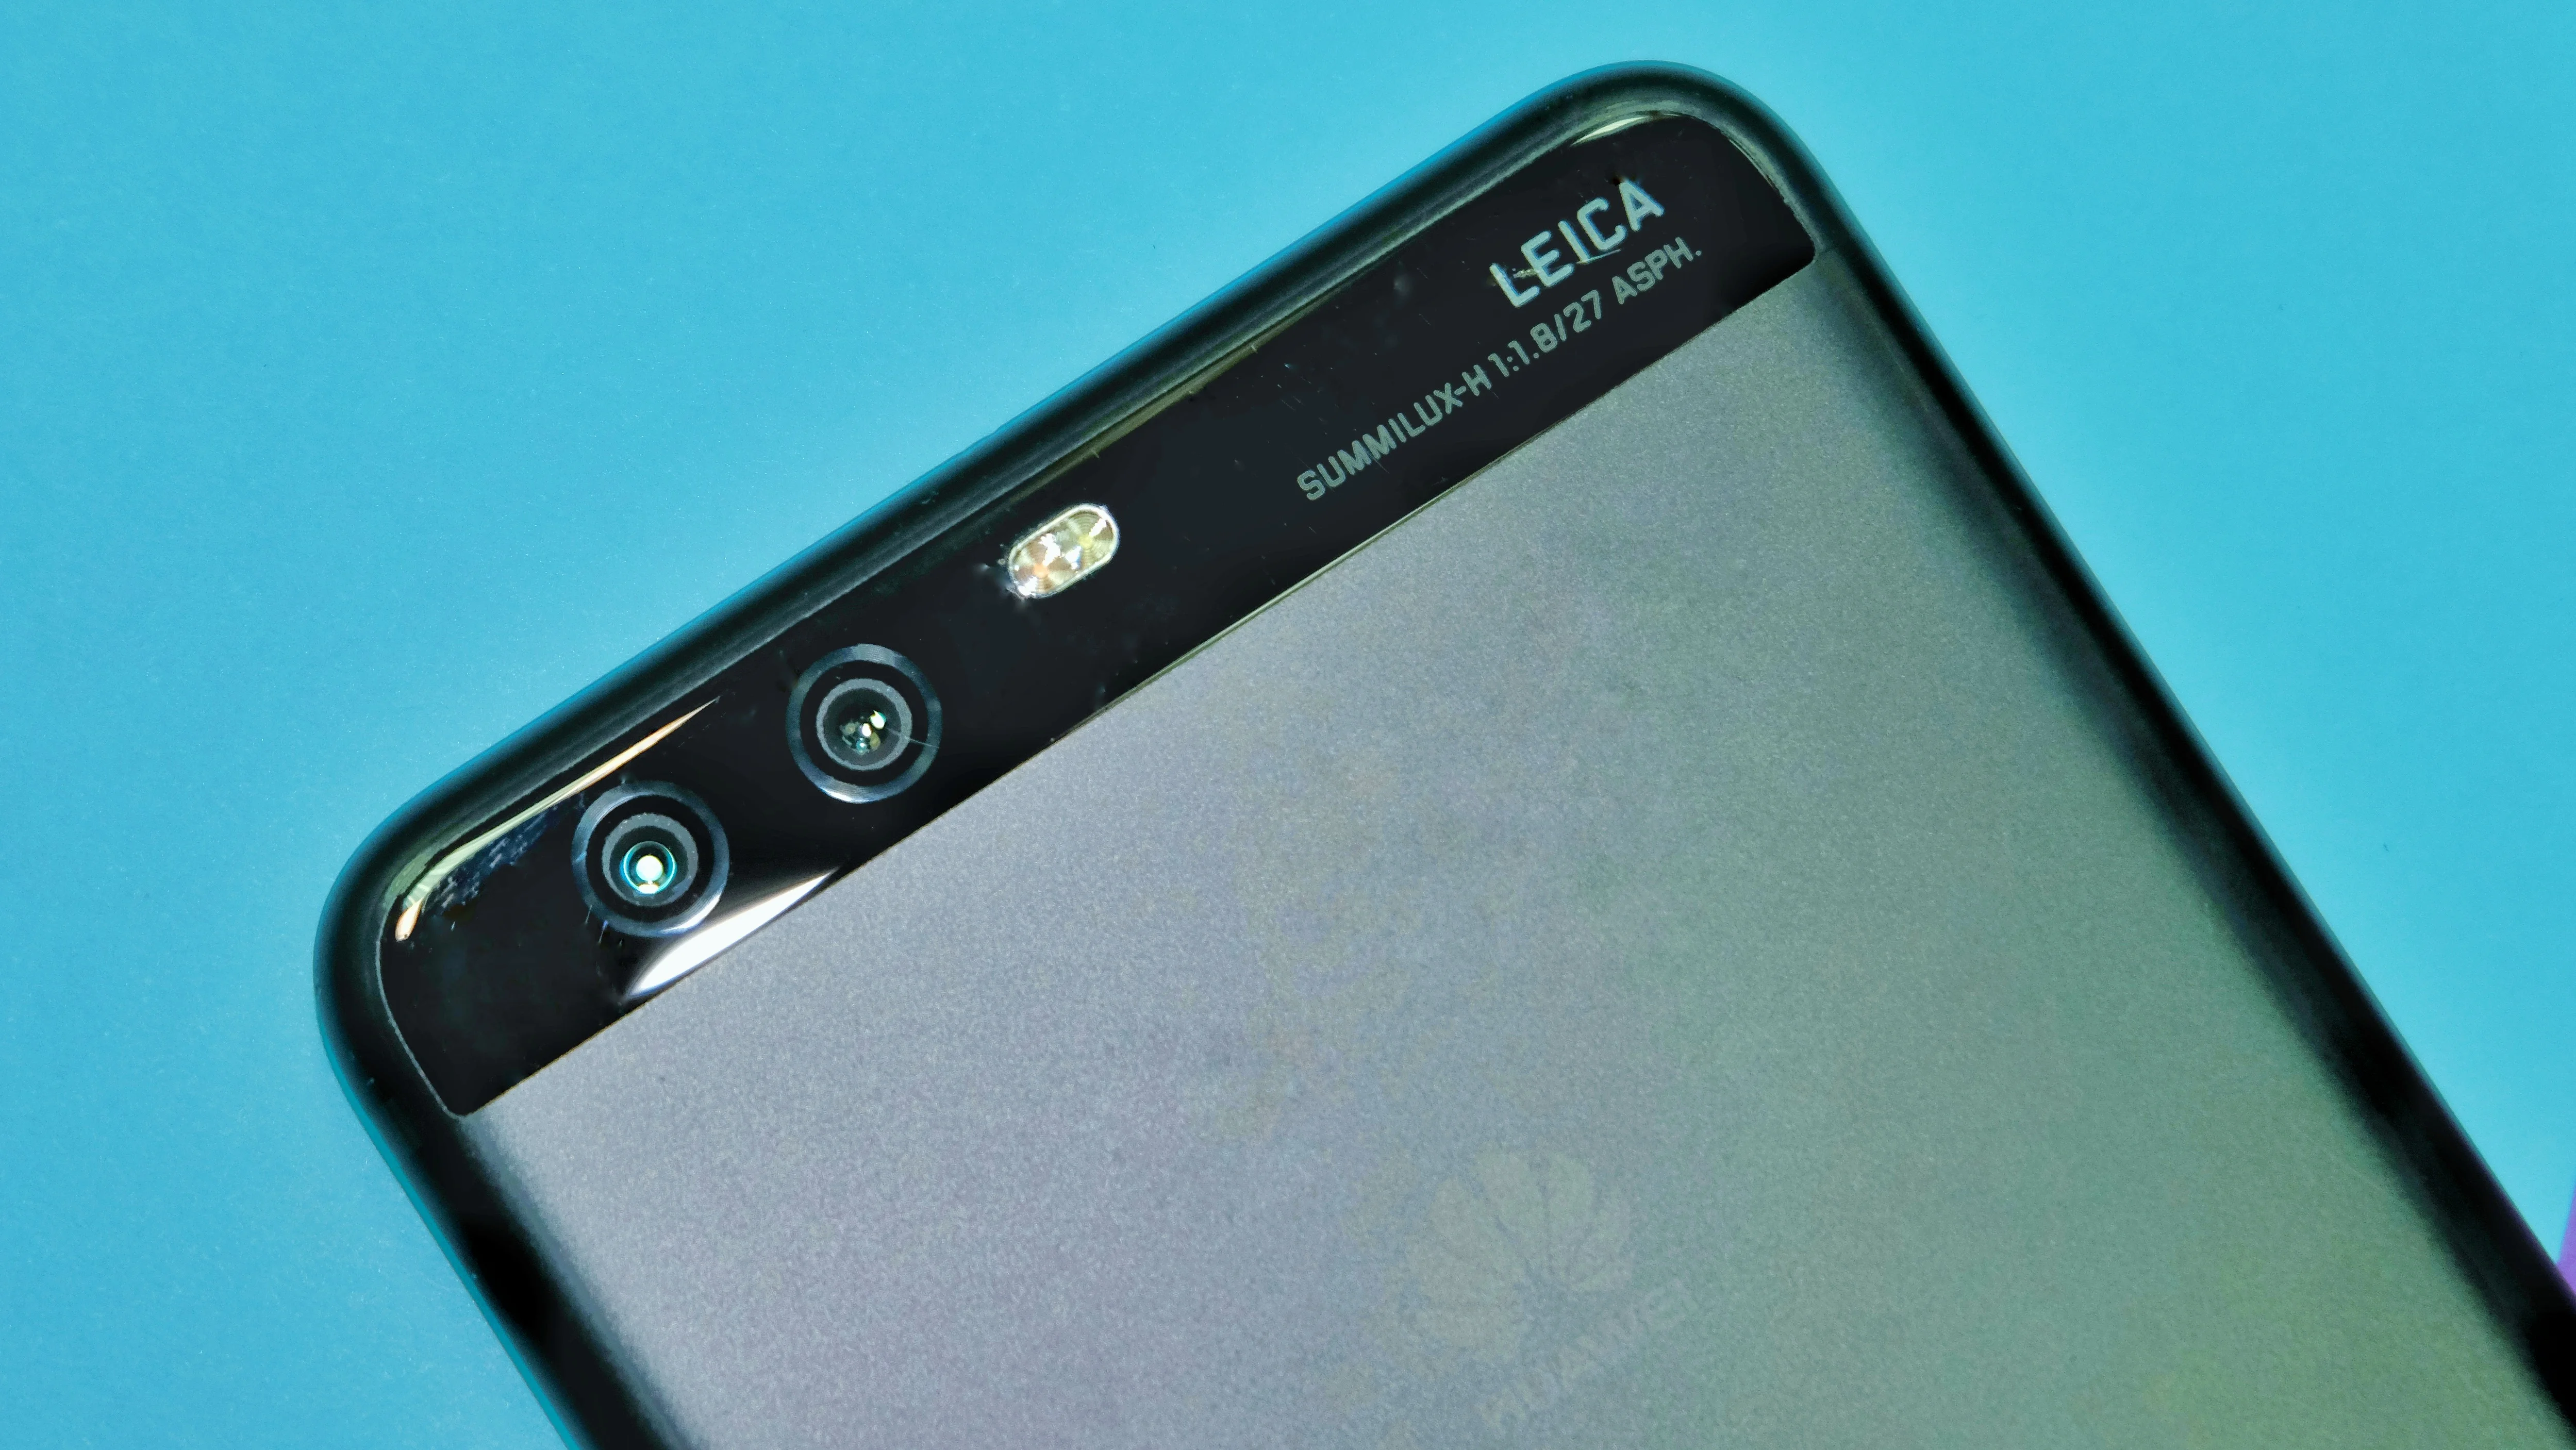 Обзор Huawei P10 Plus — достойный флагман, который зачем-то похож на iPhone - фото 4